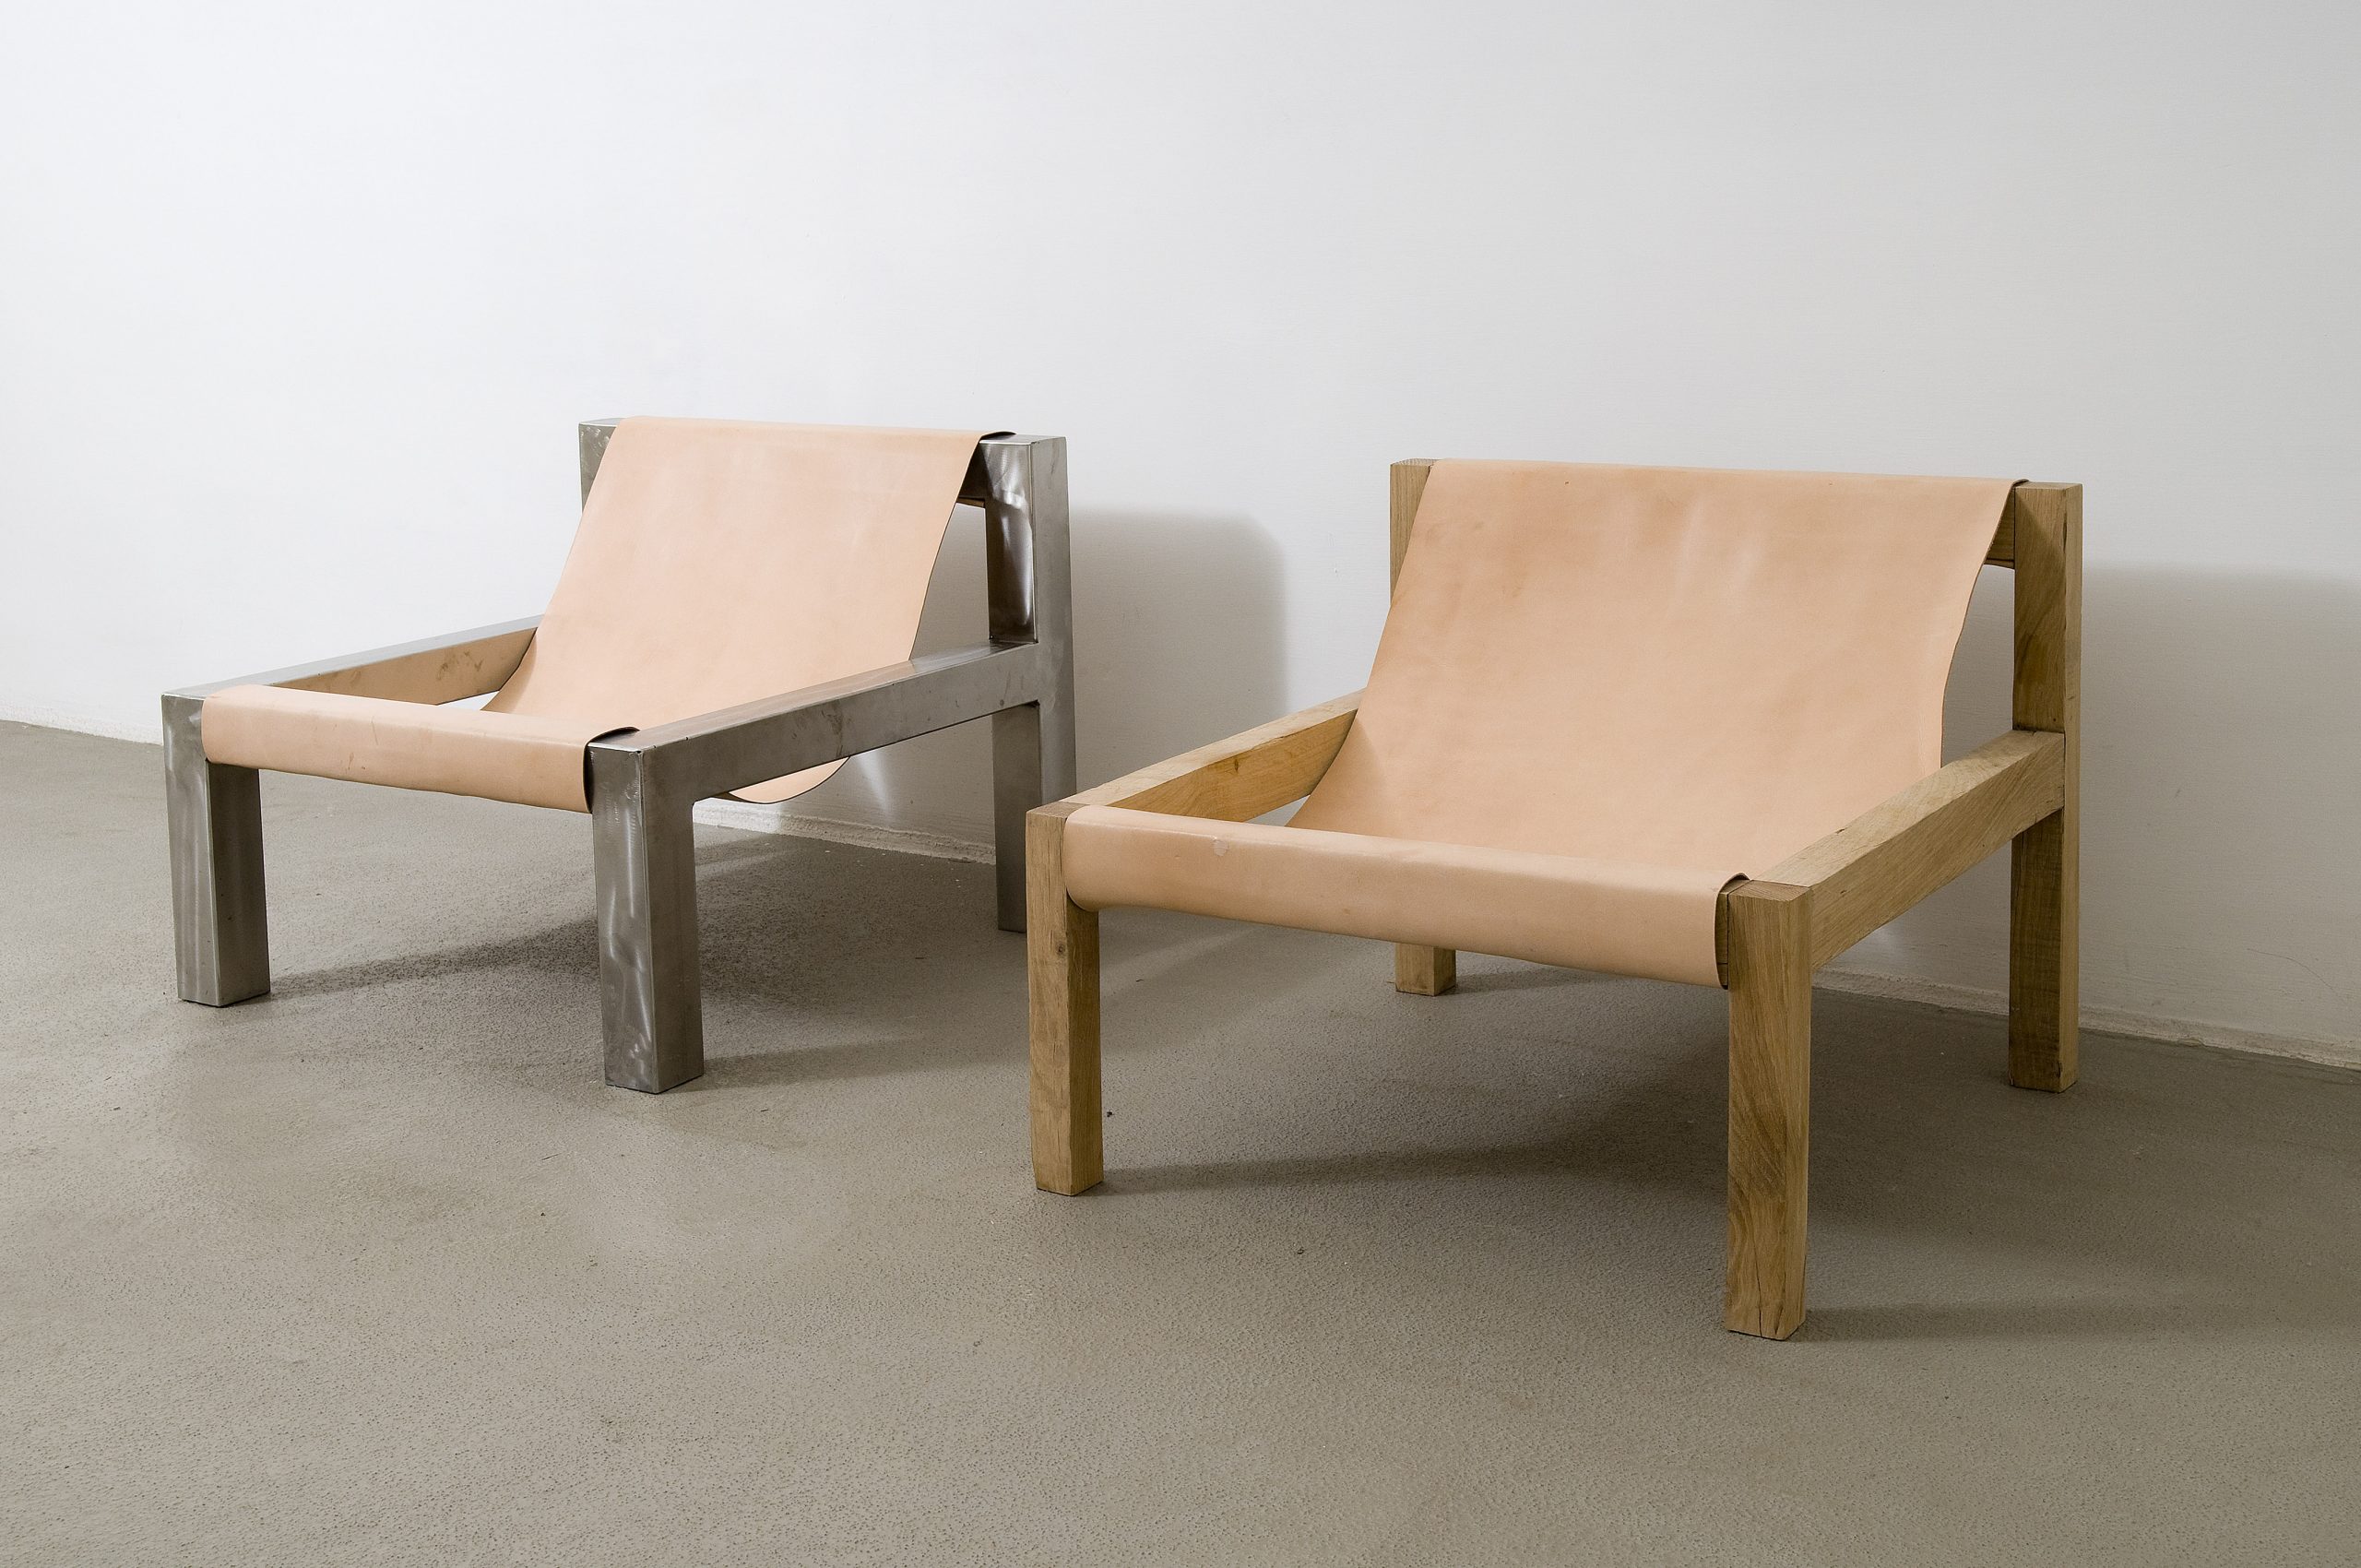 Oscar Tuazon, Two Possible Chairs IV, 2012. Foto di Giorgio Benni